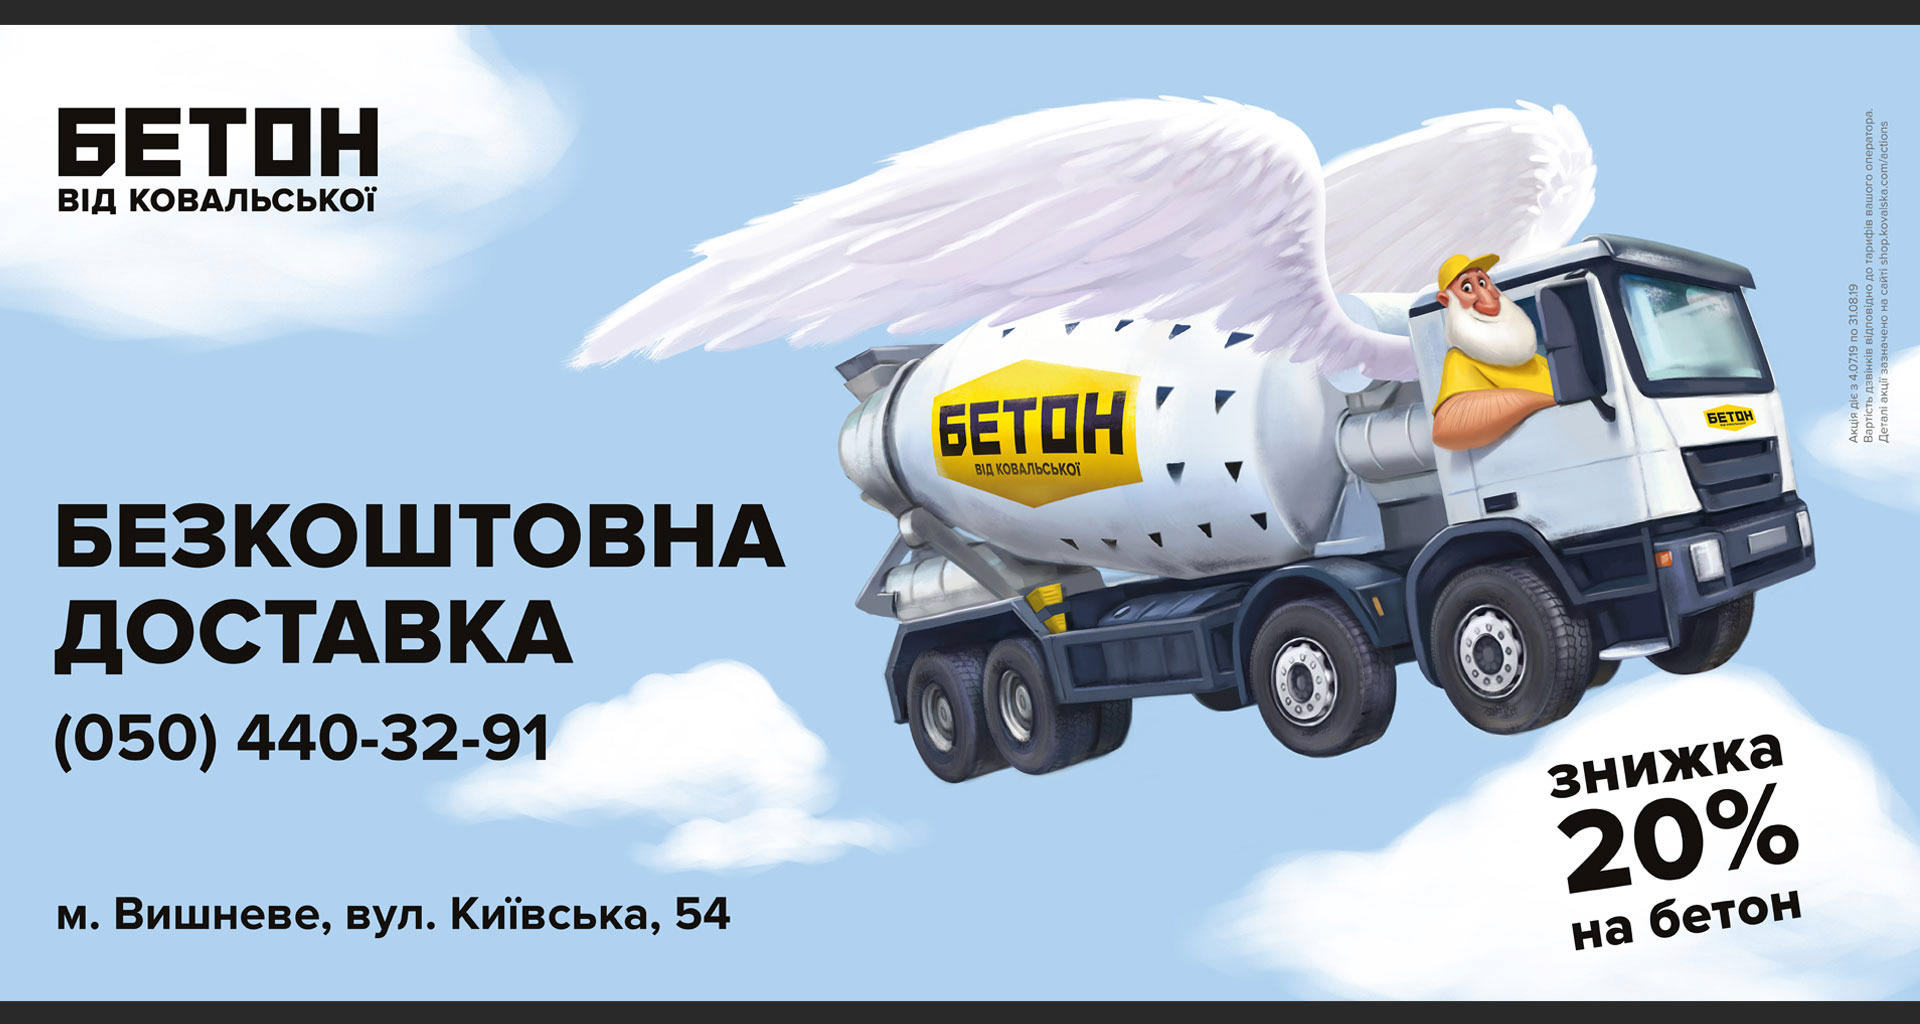 Бетон фото реклама бетон купить в красноярске с доставкой